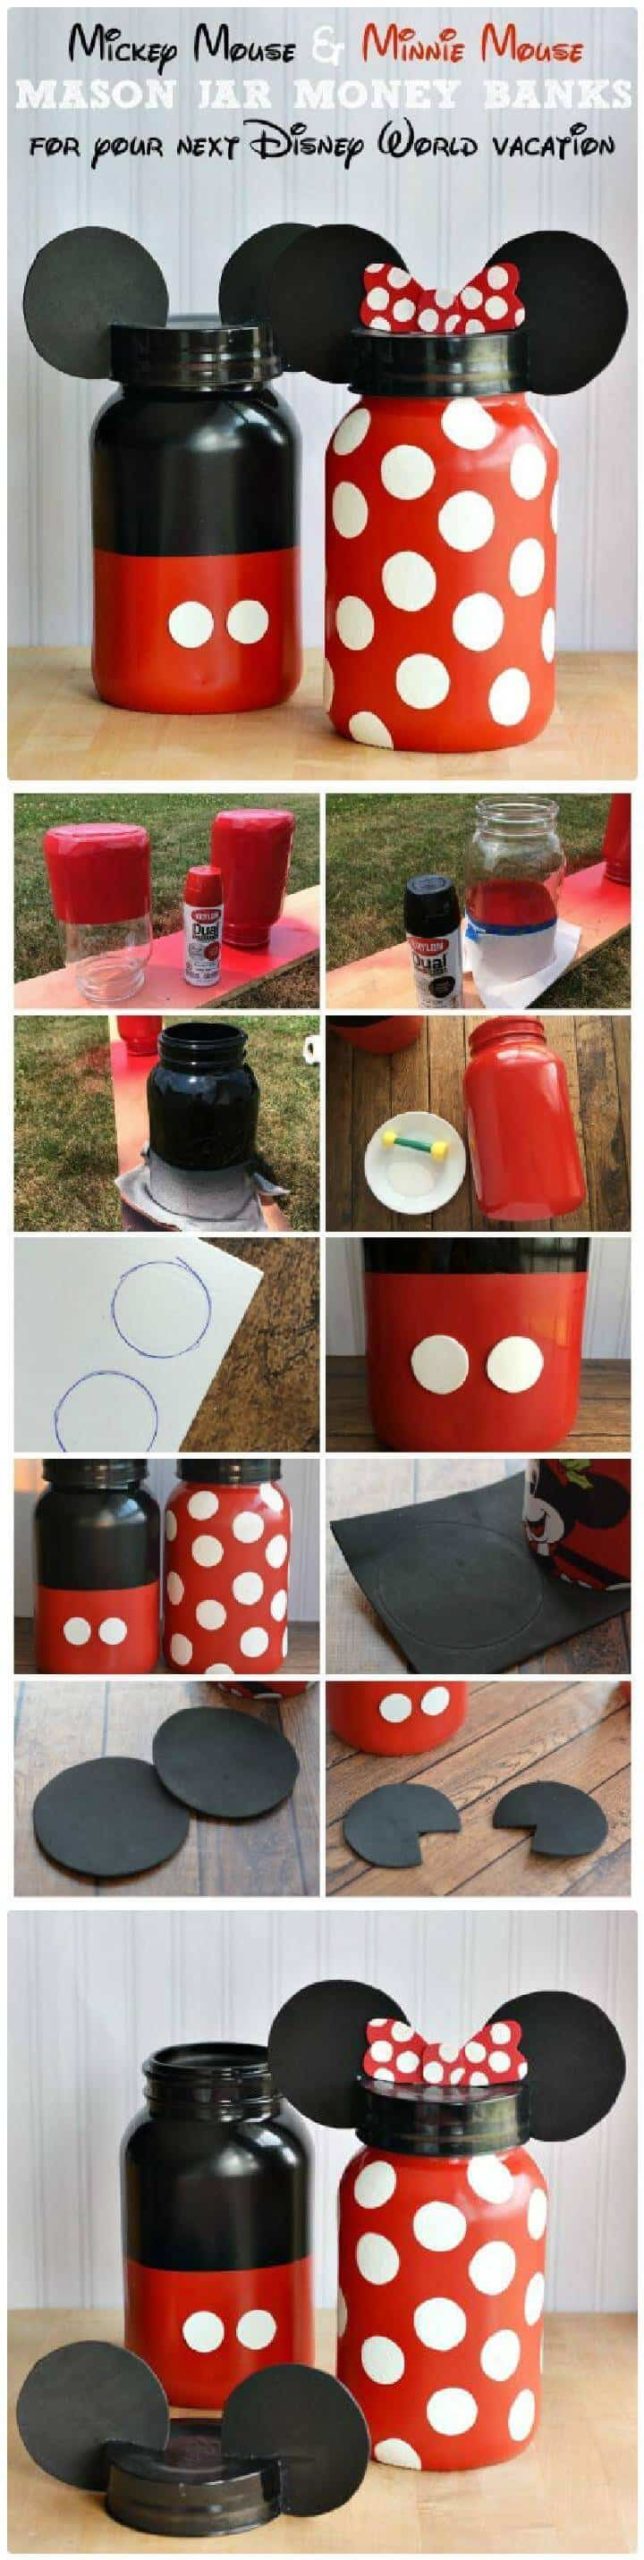 DIY Adorable Minnie y Mickey Mouse Mason Jar Money Banks